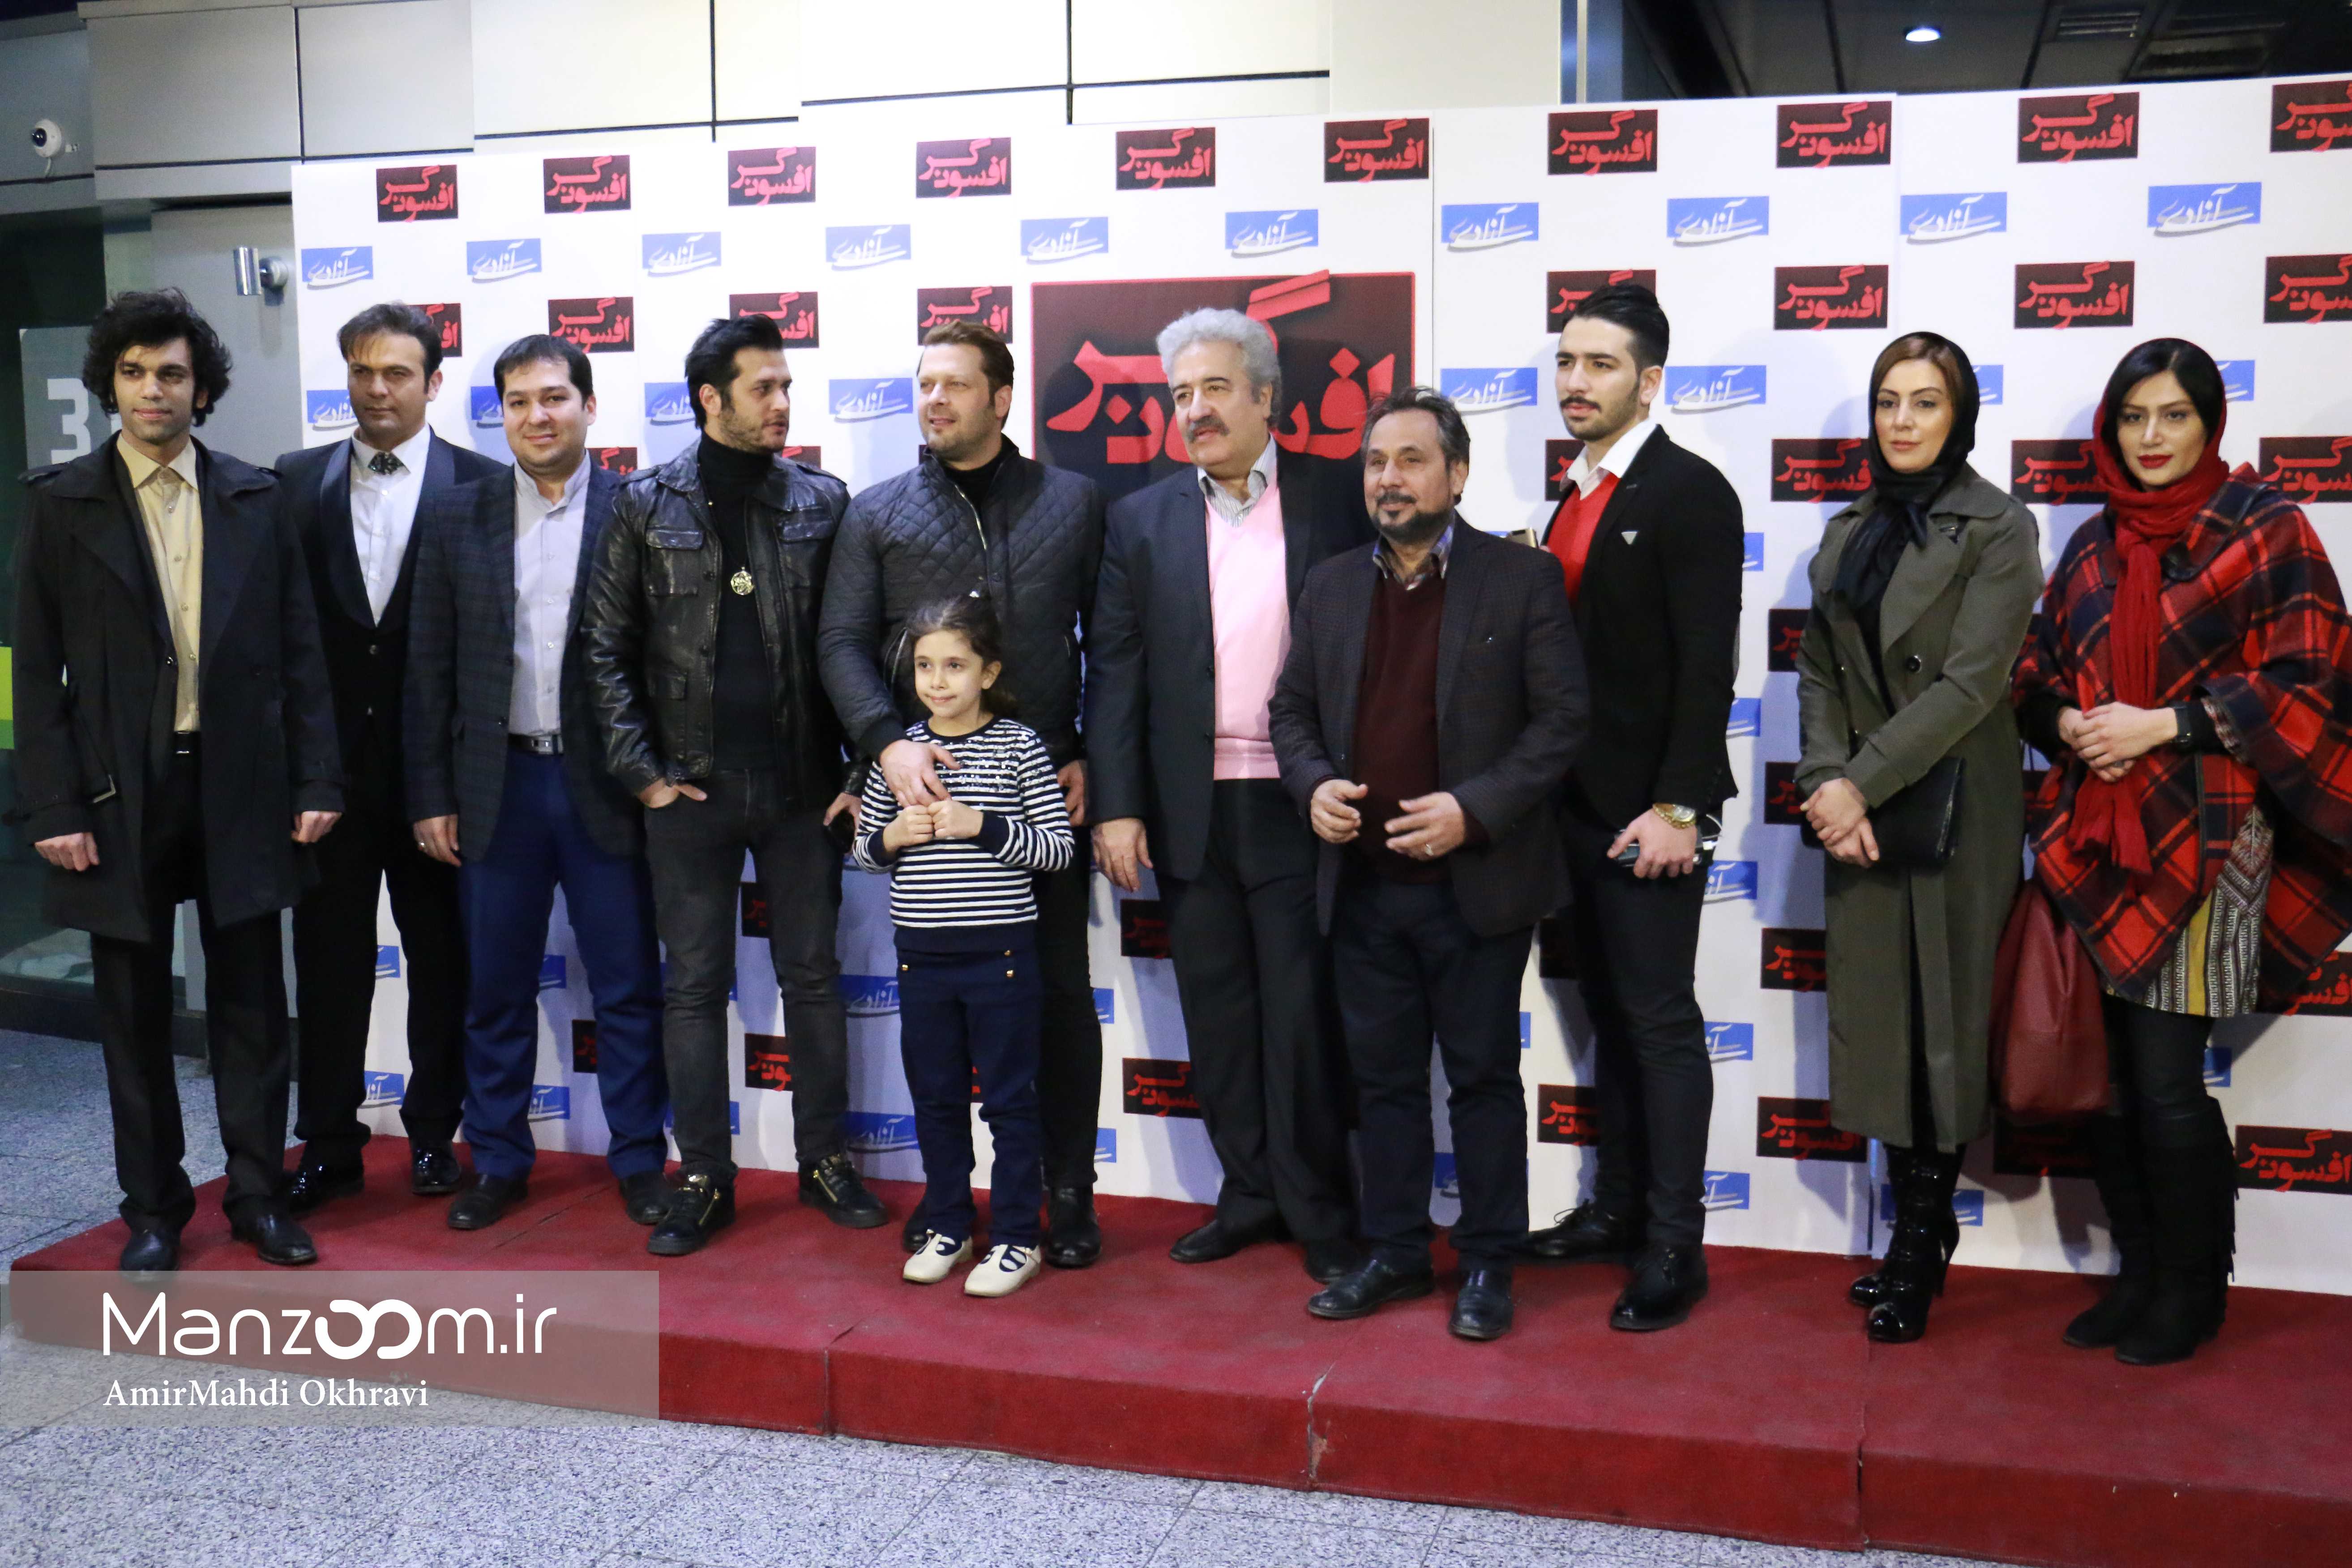 اکران افتتاحیه فیلم سینمایی افسونگر با حضور مجید قناد، پژمان بازغی، سیاوش خیرابی و نیلوفر شهیدی